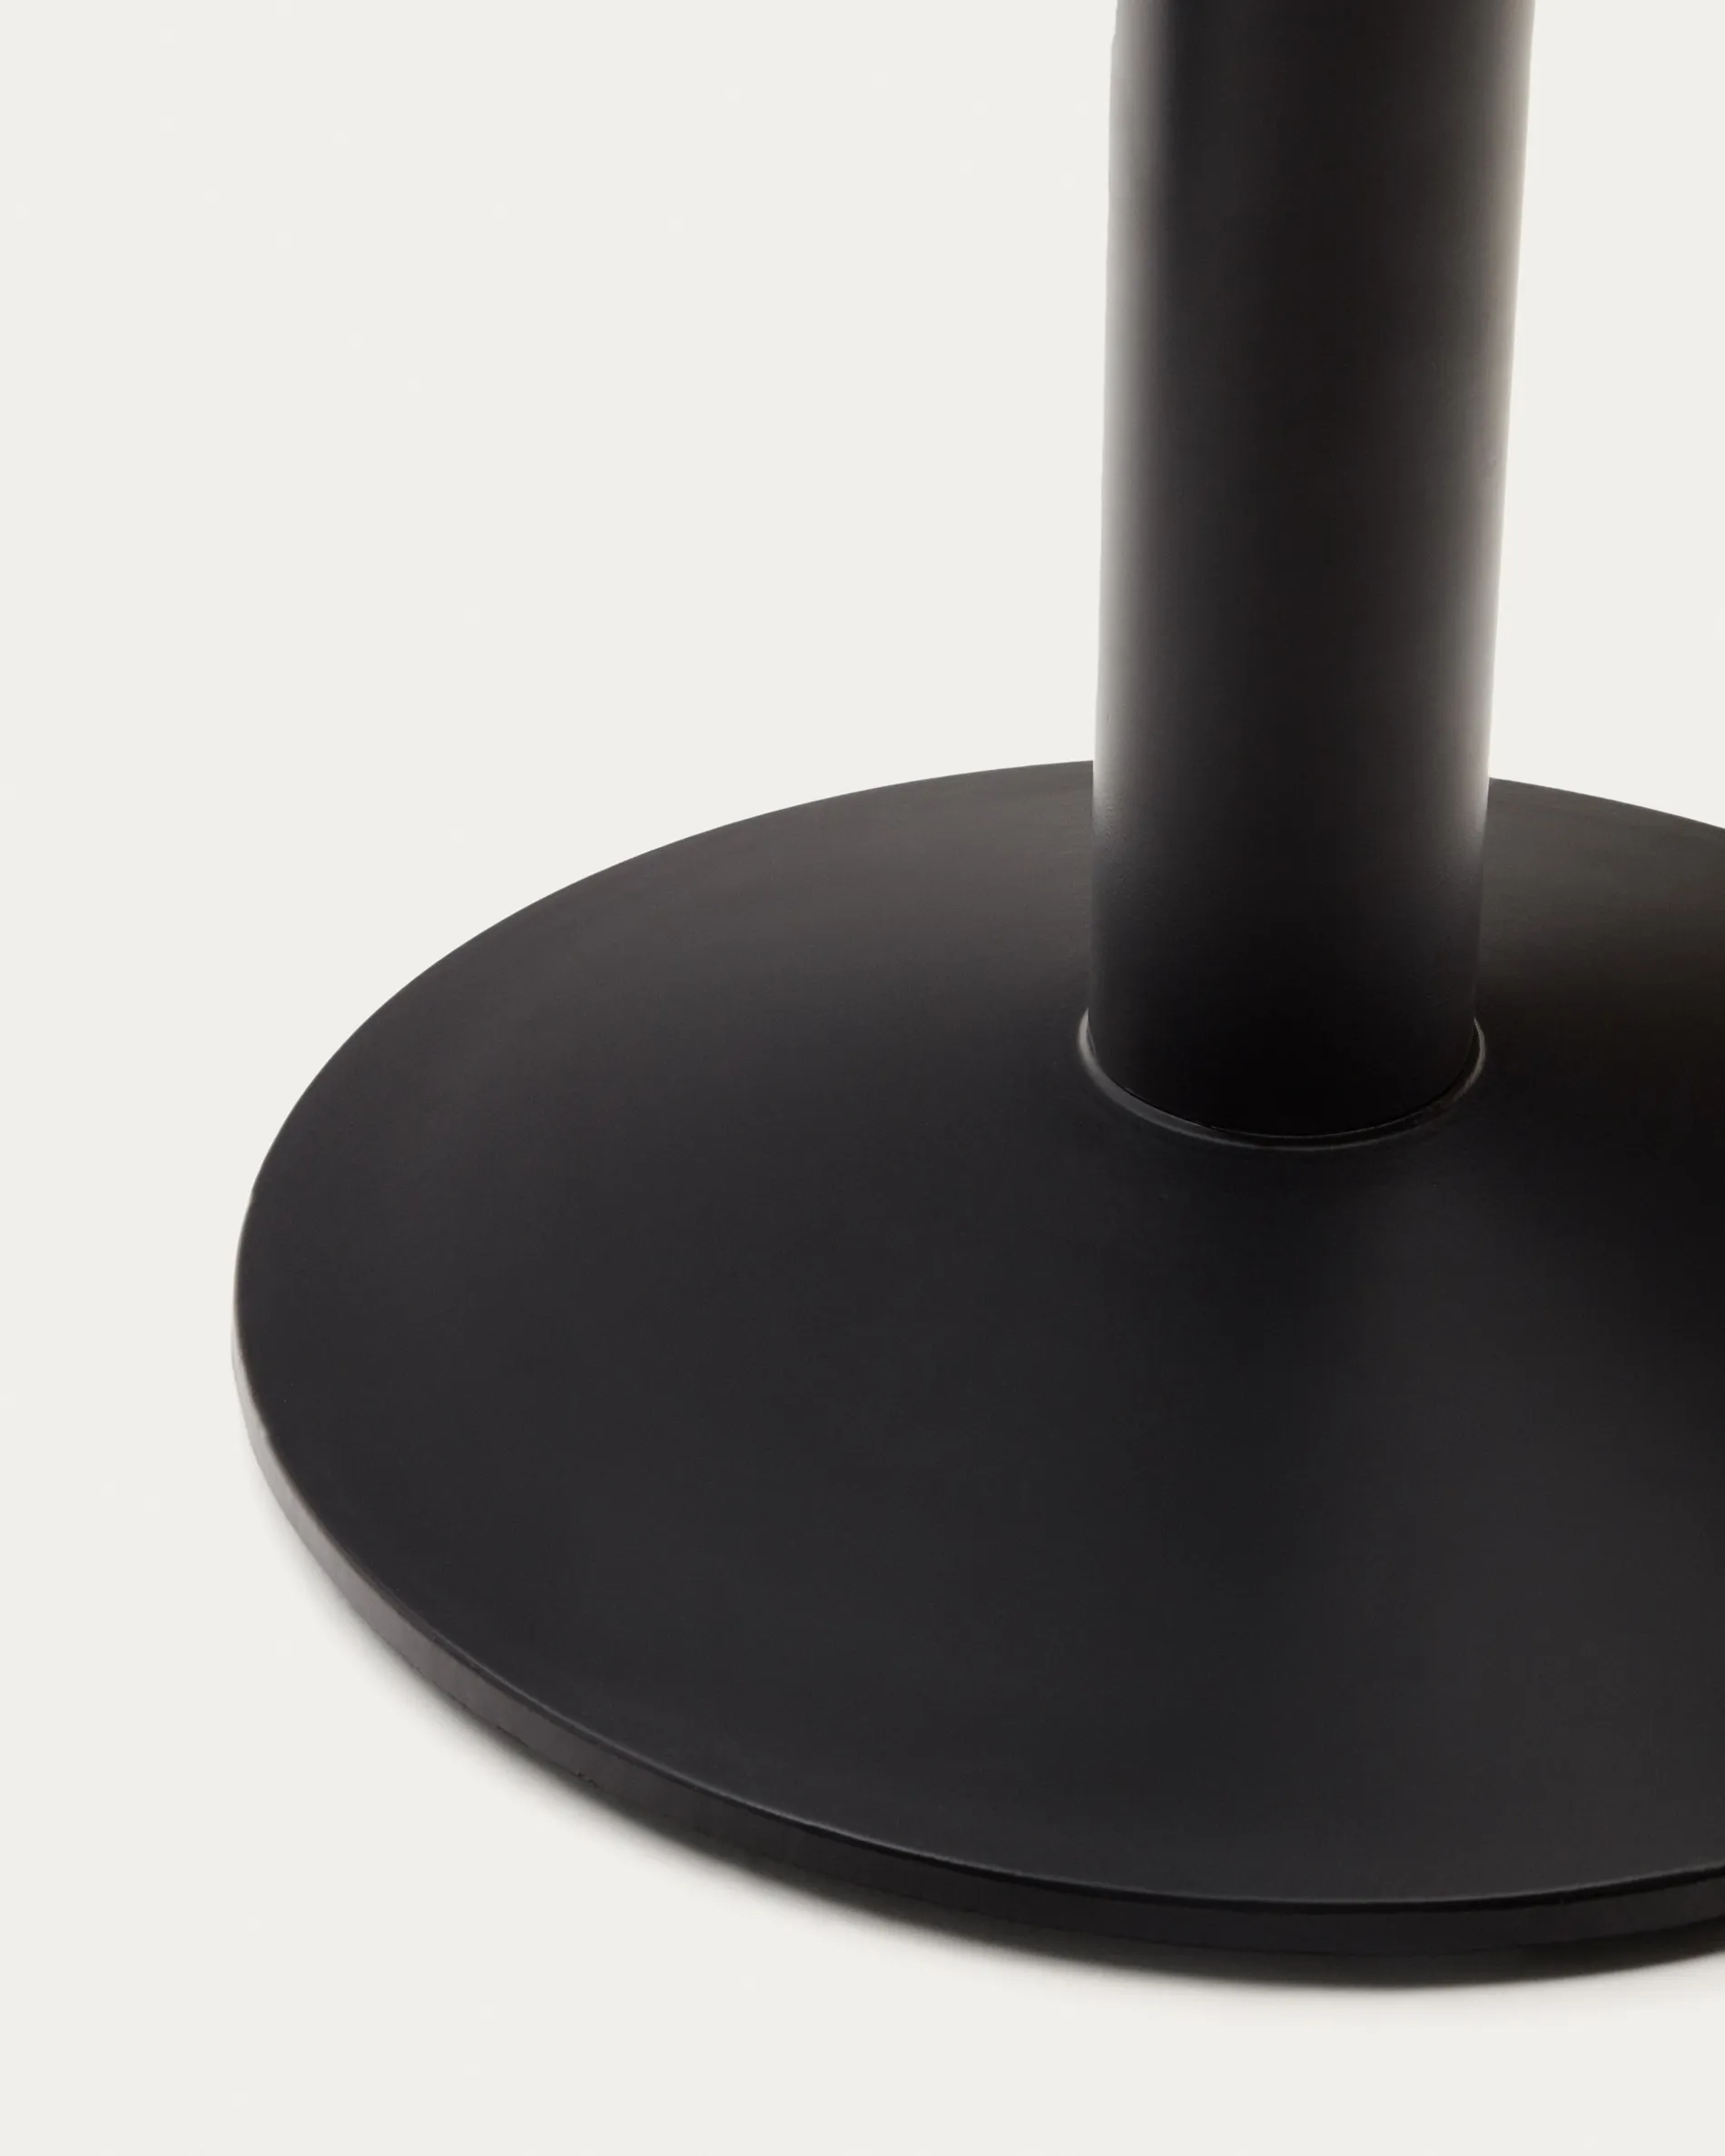 Круглый уличный столик La Forma Esilda черный на черном металлическом основании 68х70 177989